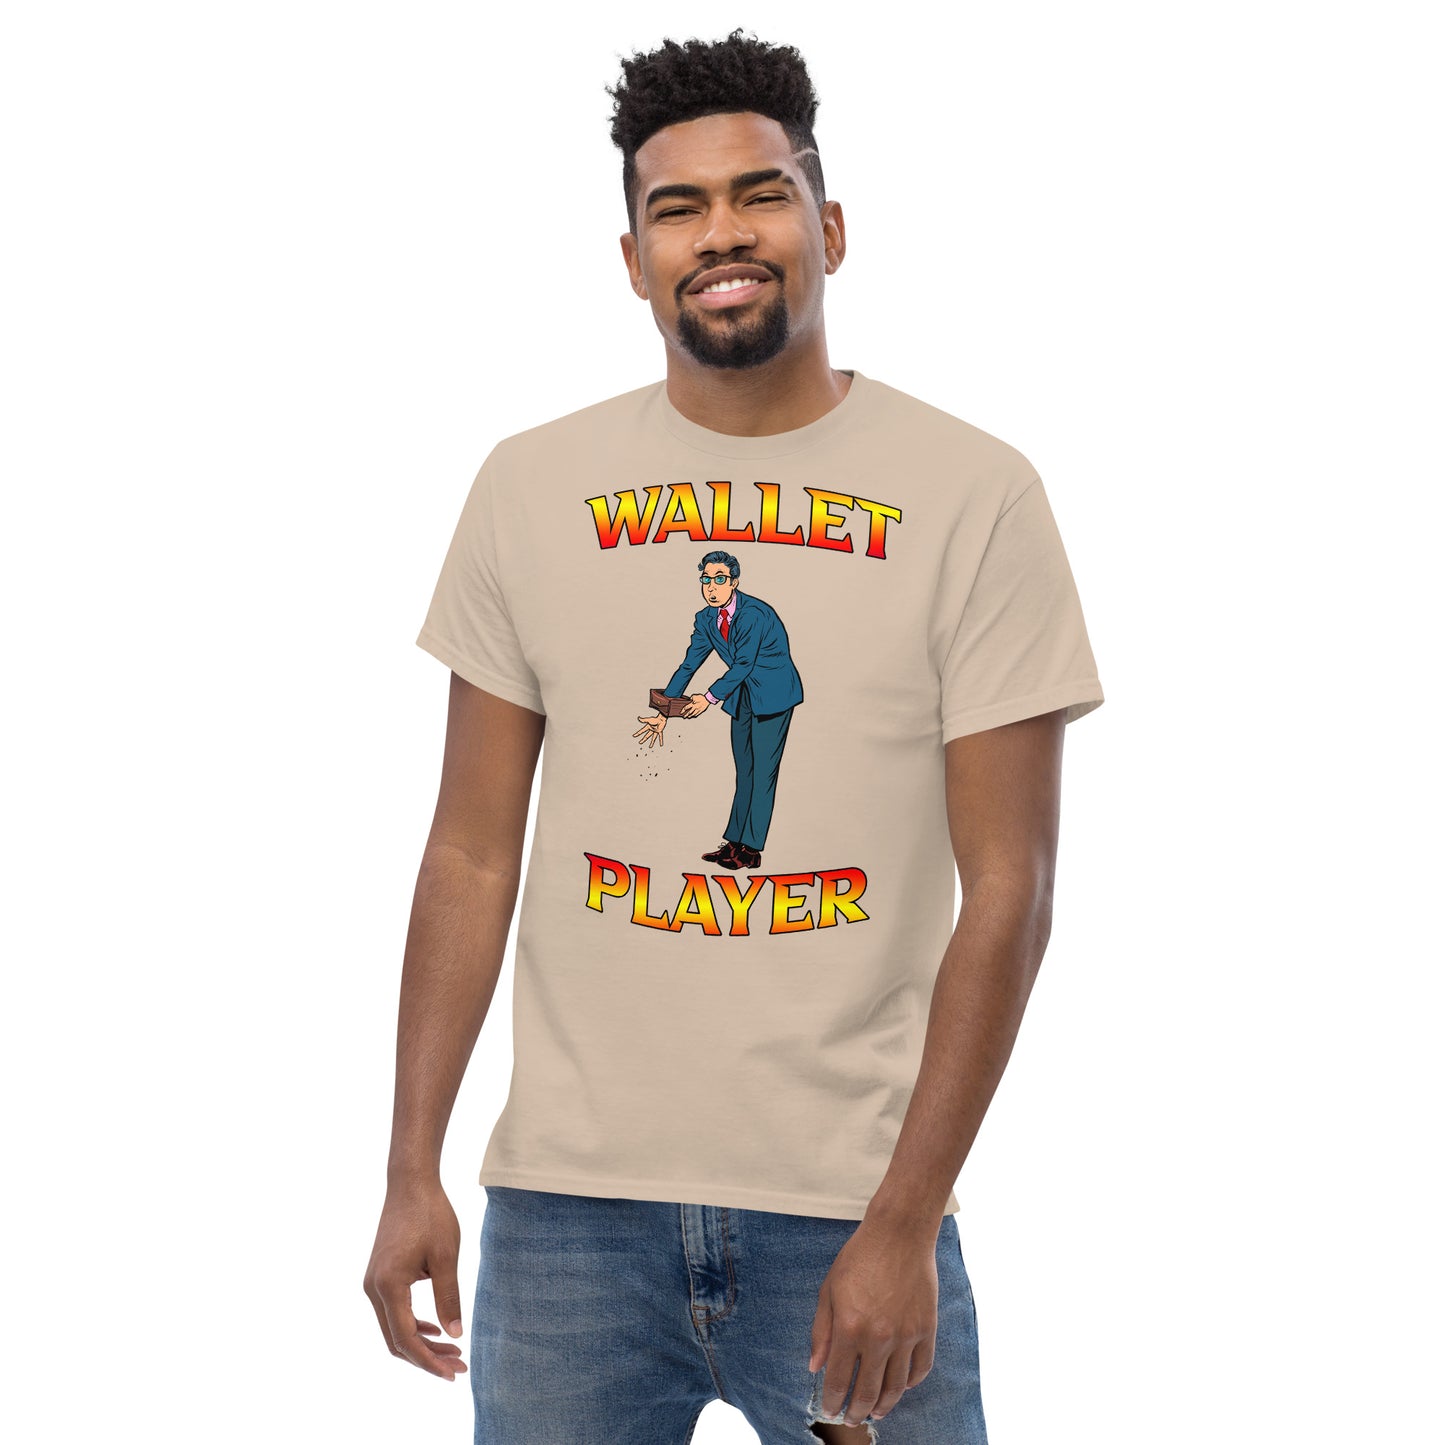 Wallet Player - Men's tee